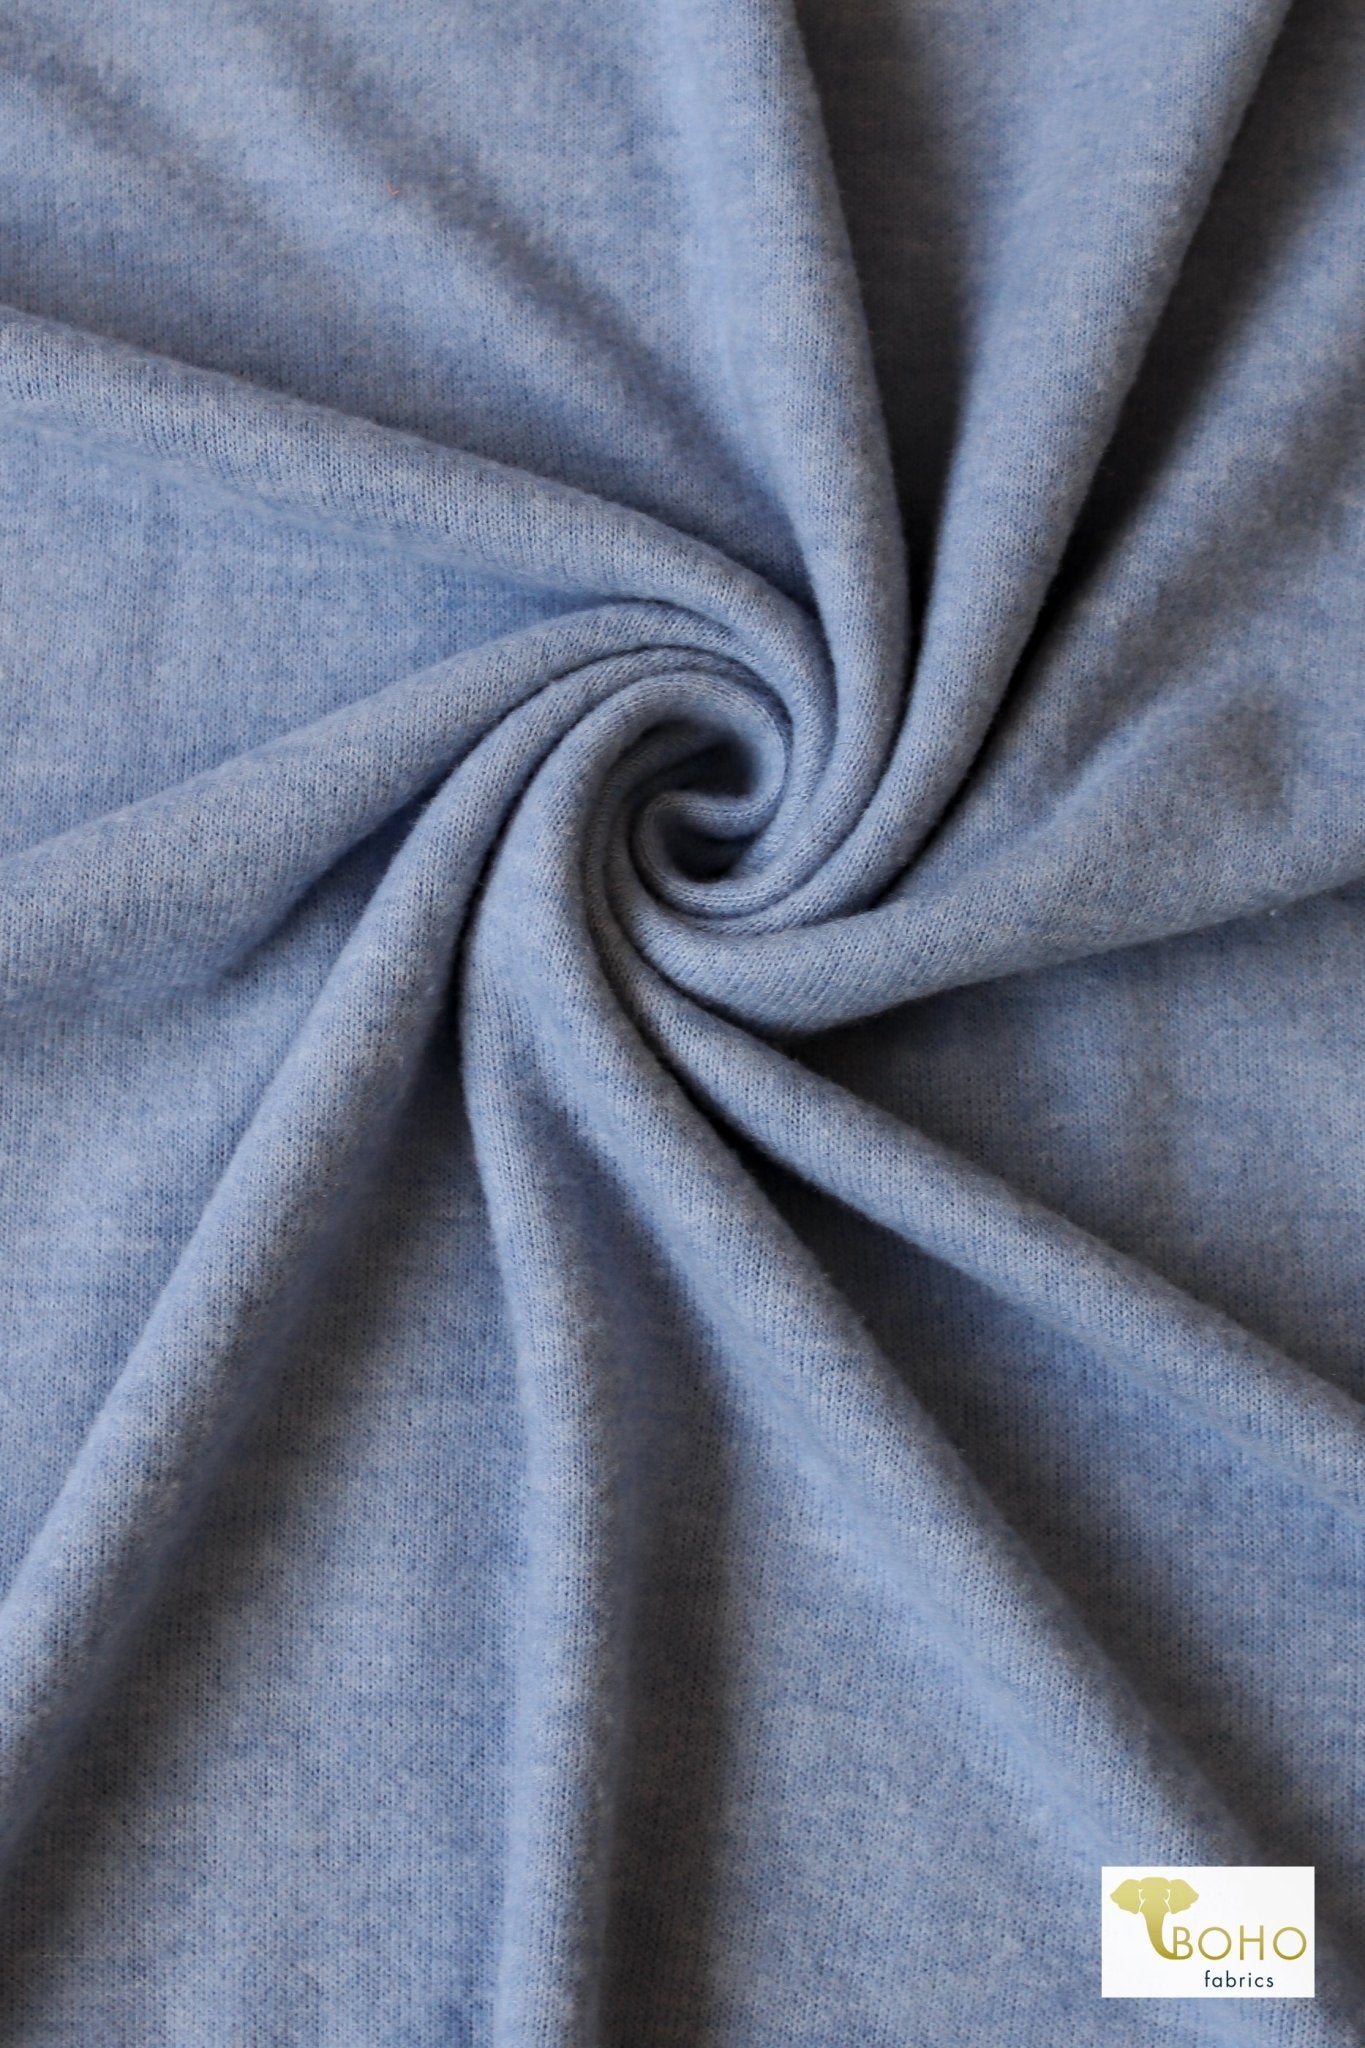 Serenity Blue, Brushed Sweater Knit - Boho Fabrics